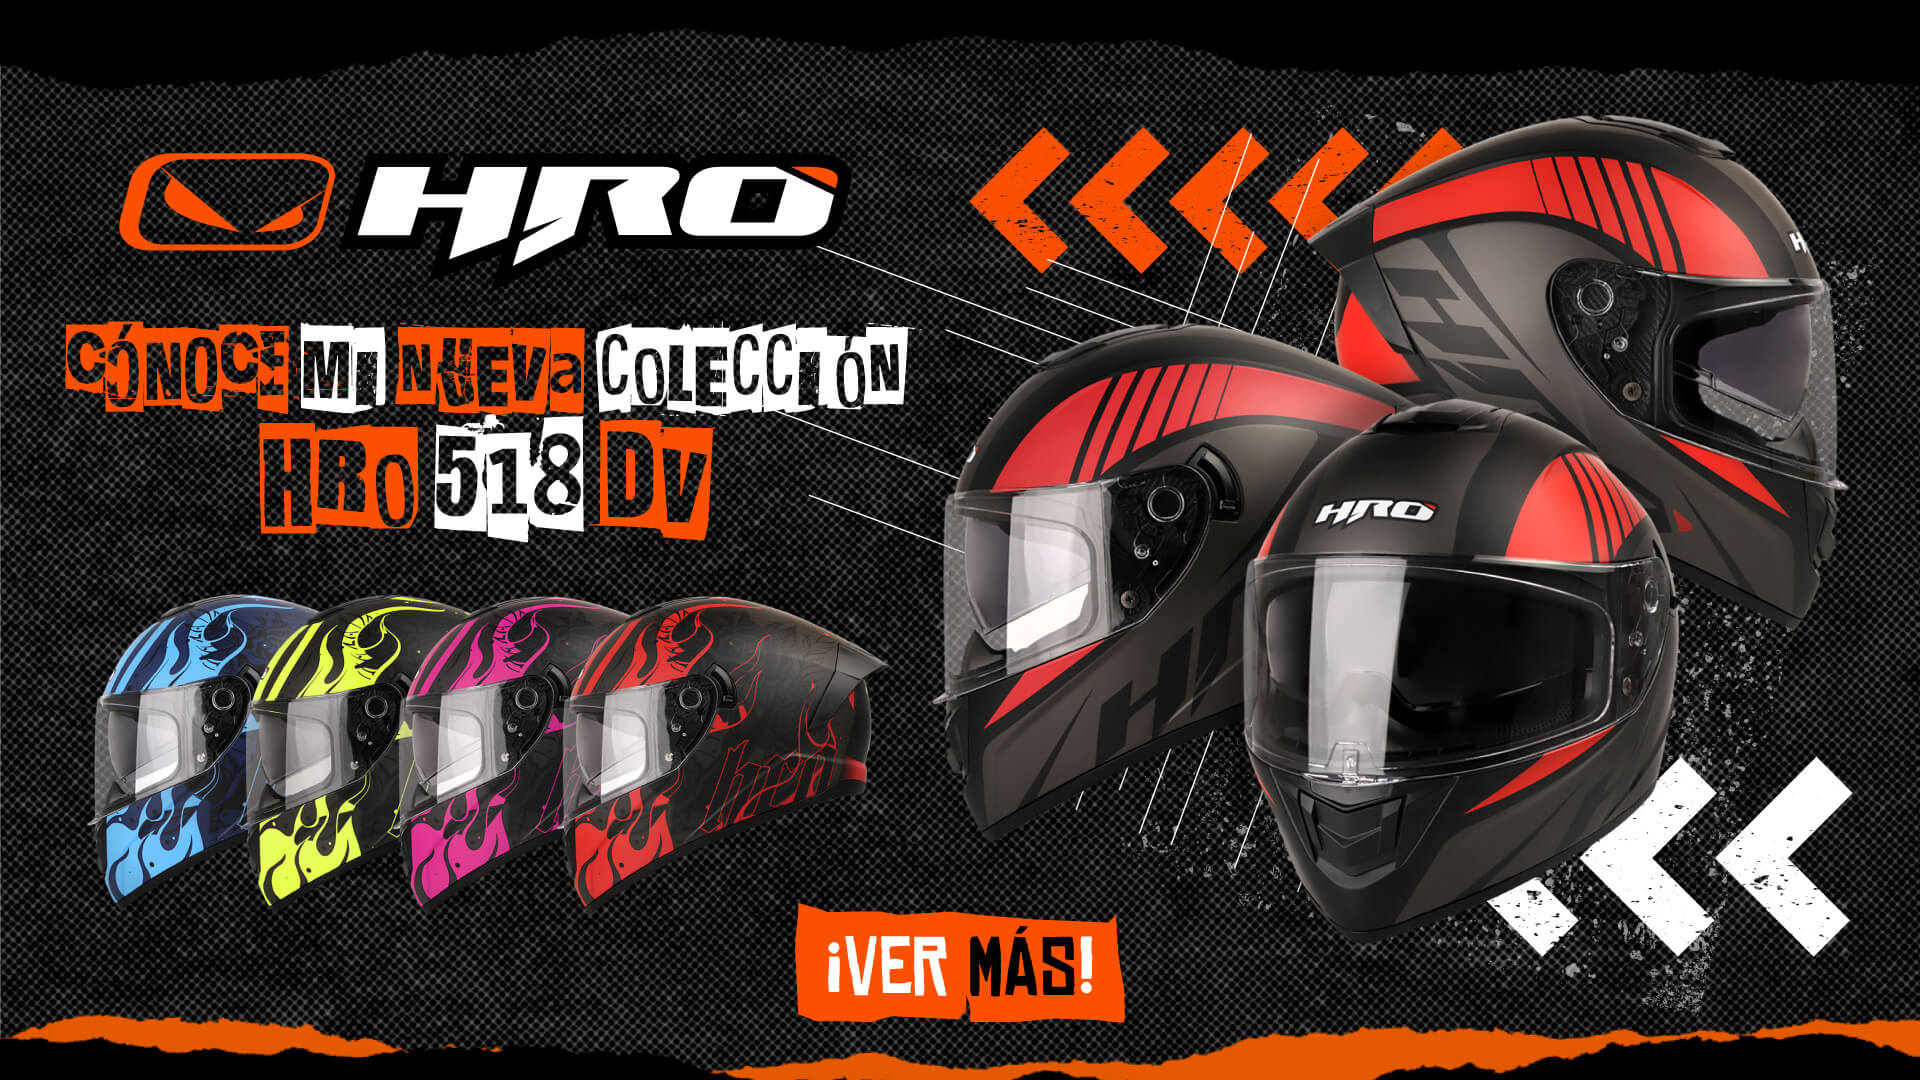 Cascos de moto Cool Black Casco integral Hombres Motocross Casco Moto Moto  Racing Biker Certificación DOT Abs